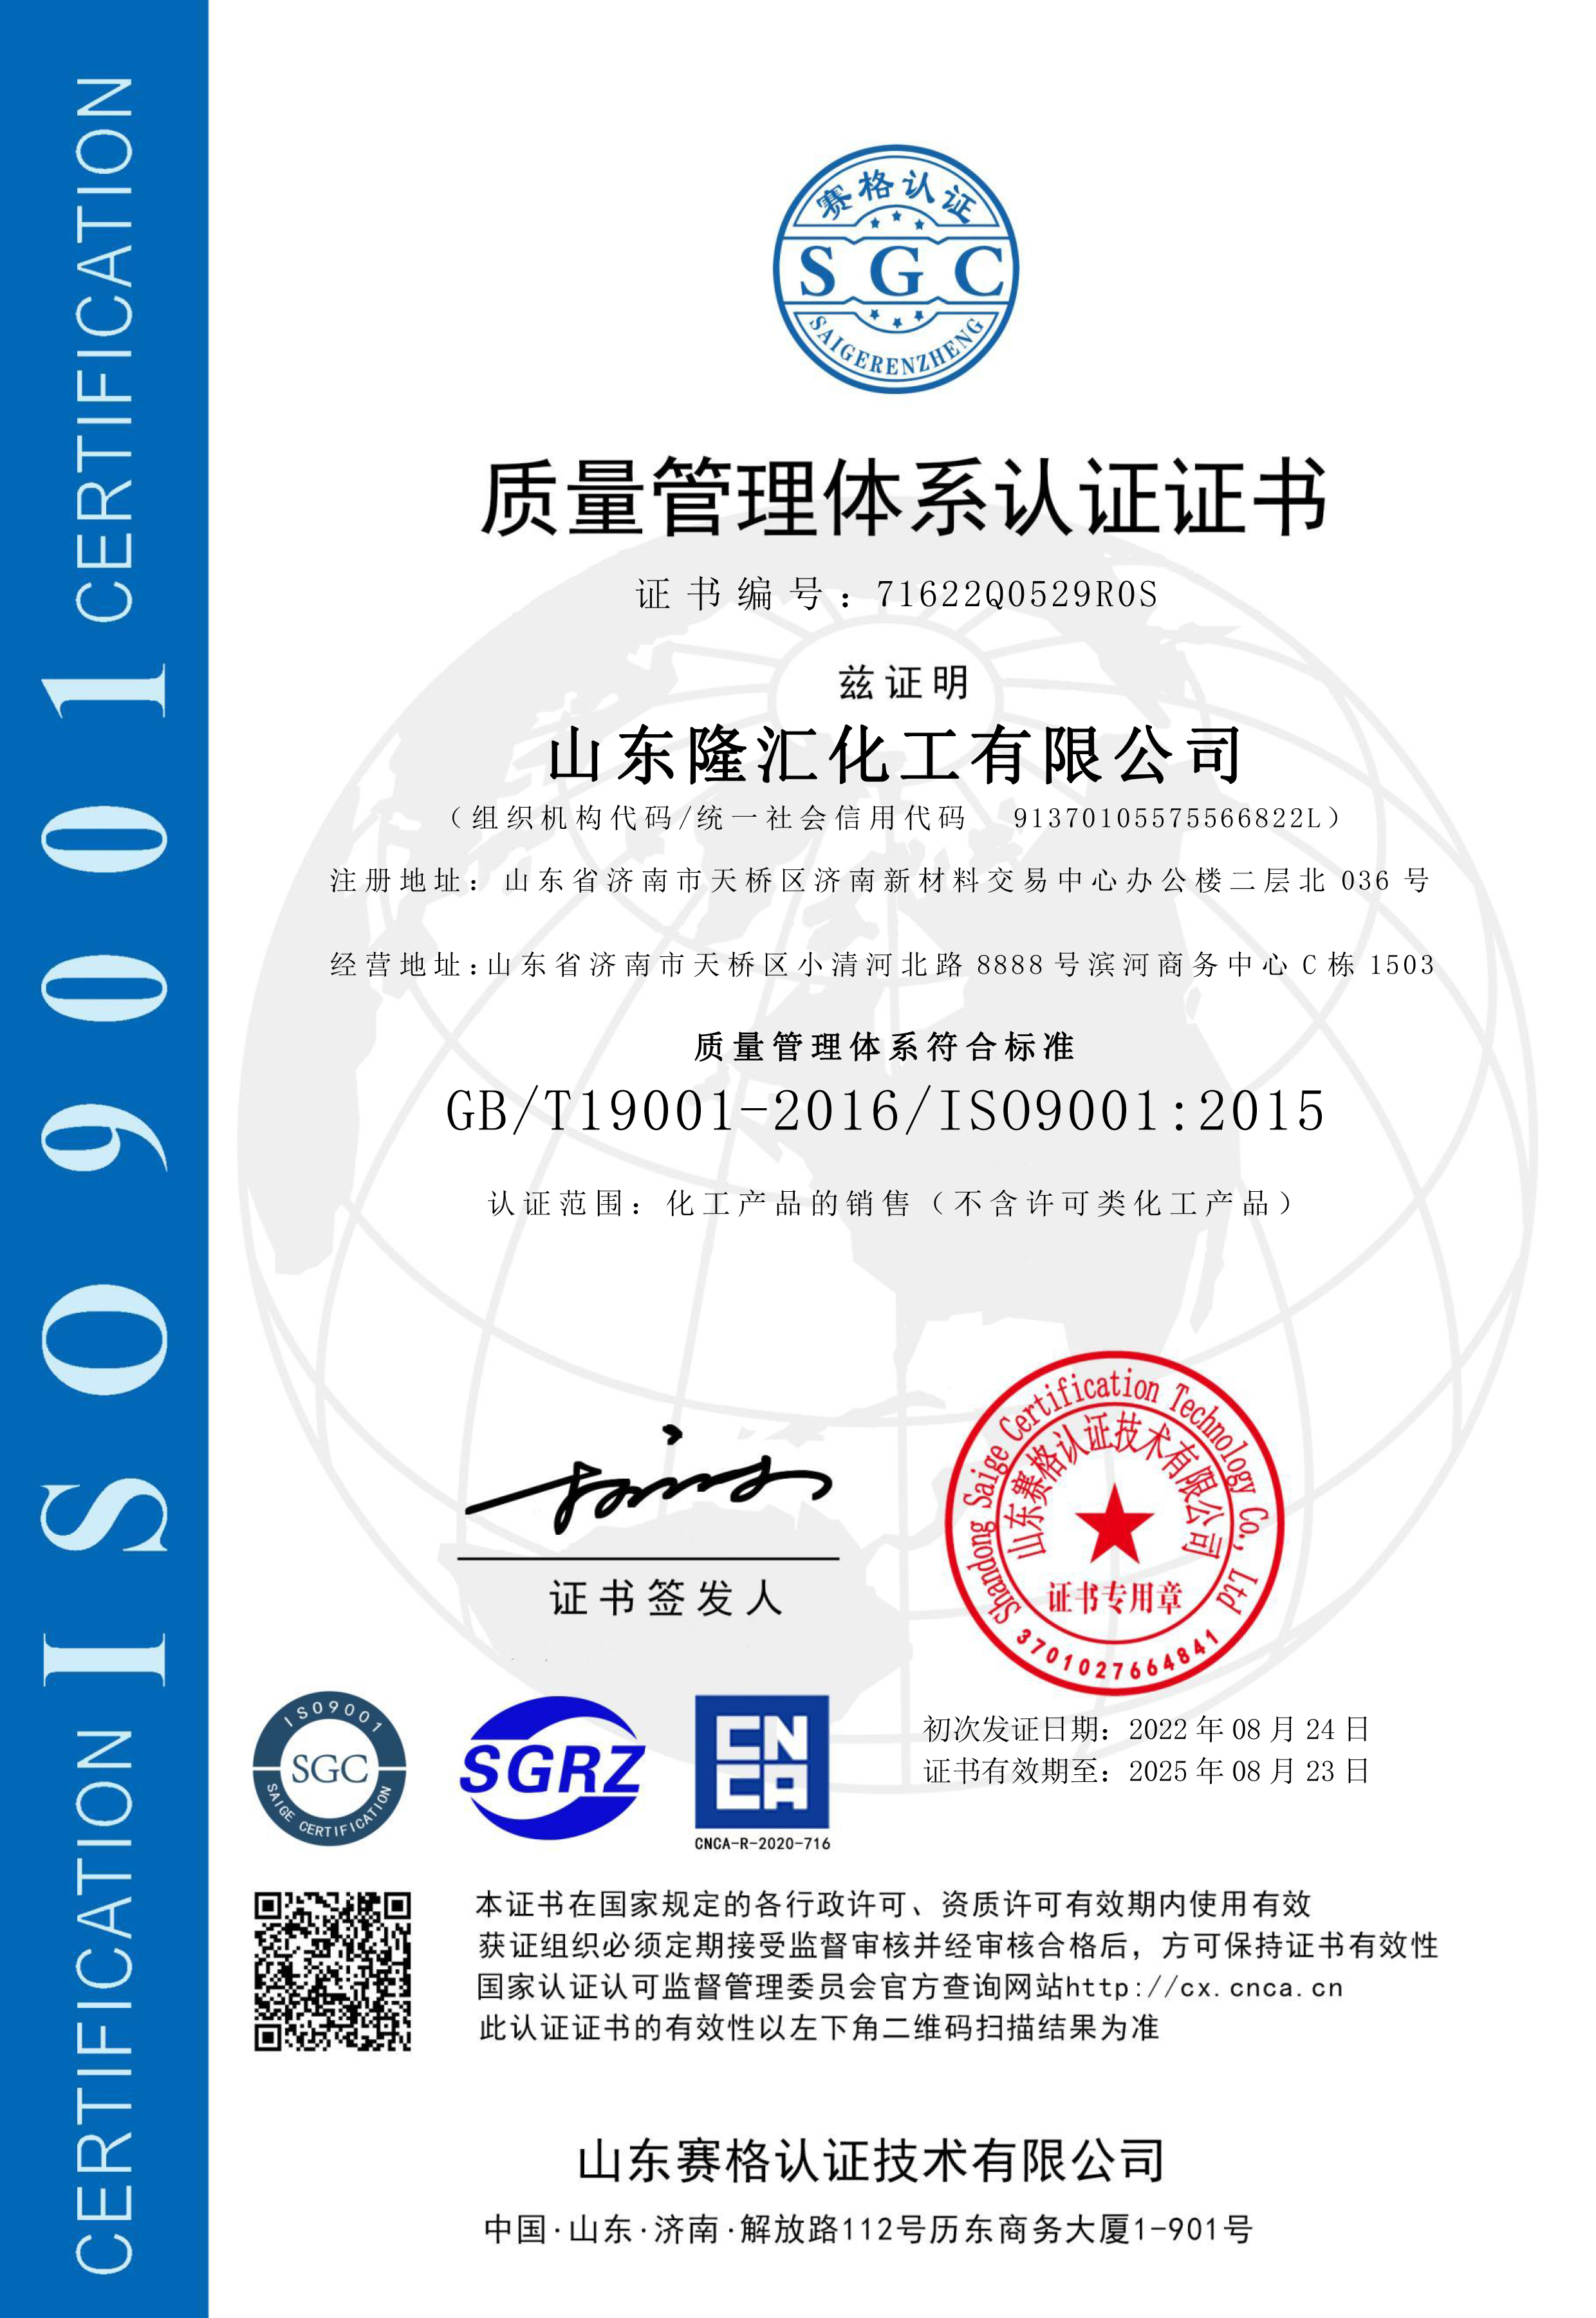 隆汇化工ISO9001质量管理体系认证